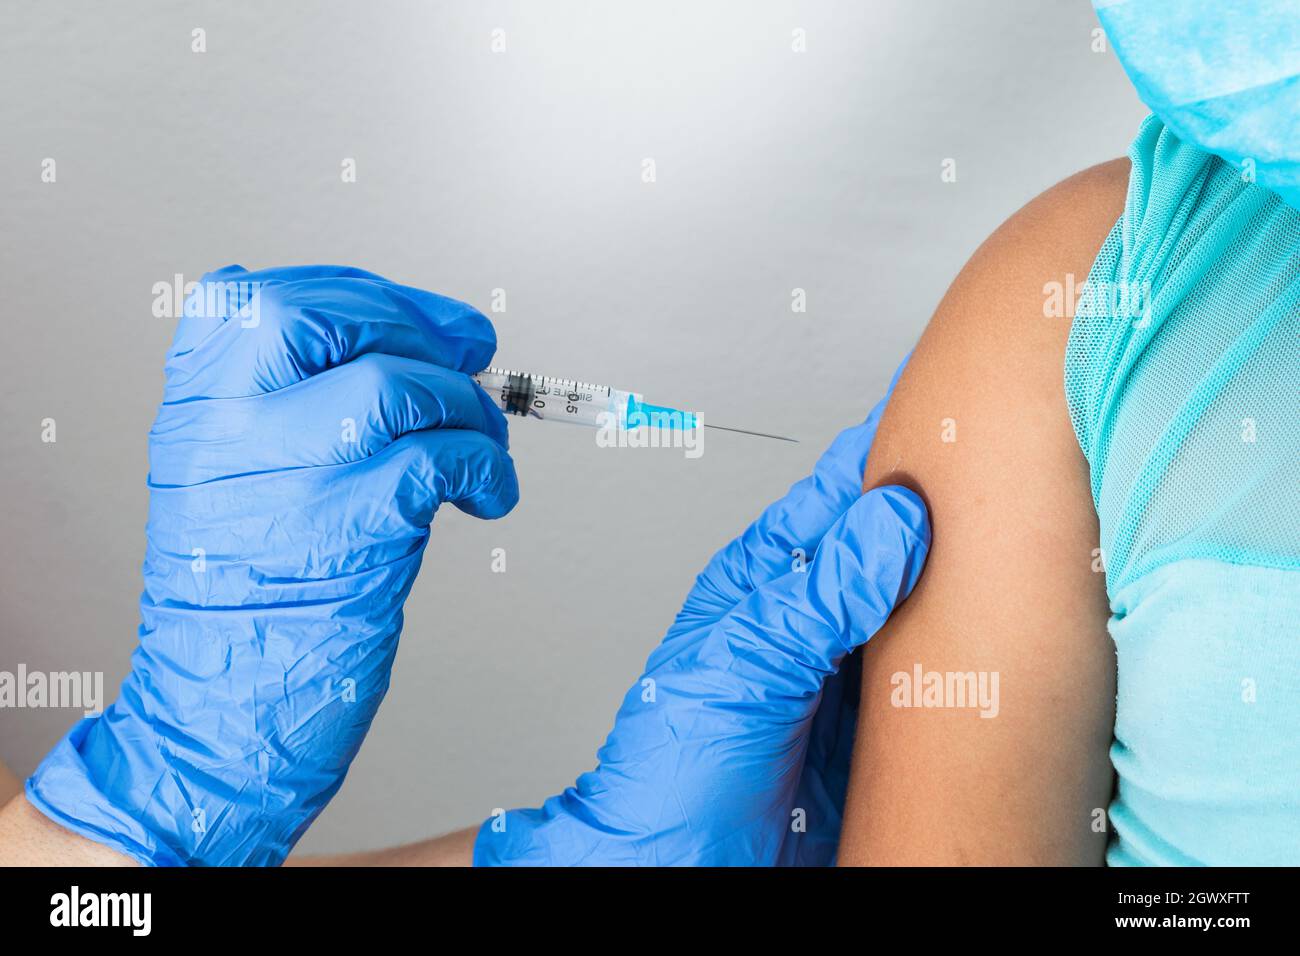 l'infirmière des enfants sur le point d'administrer l'injection dans le bras d'une petite fille brune. médecin injectant le vaccin covid-19. vaccin contre la grippe Banque D'Images